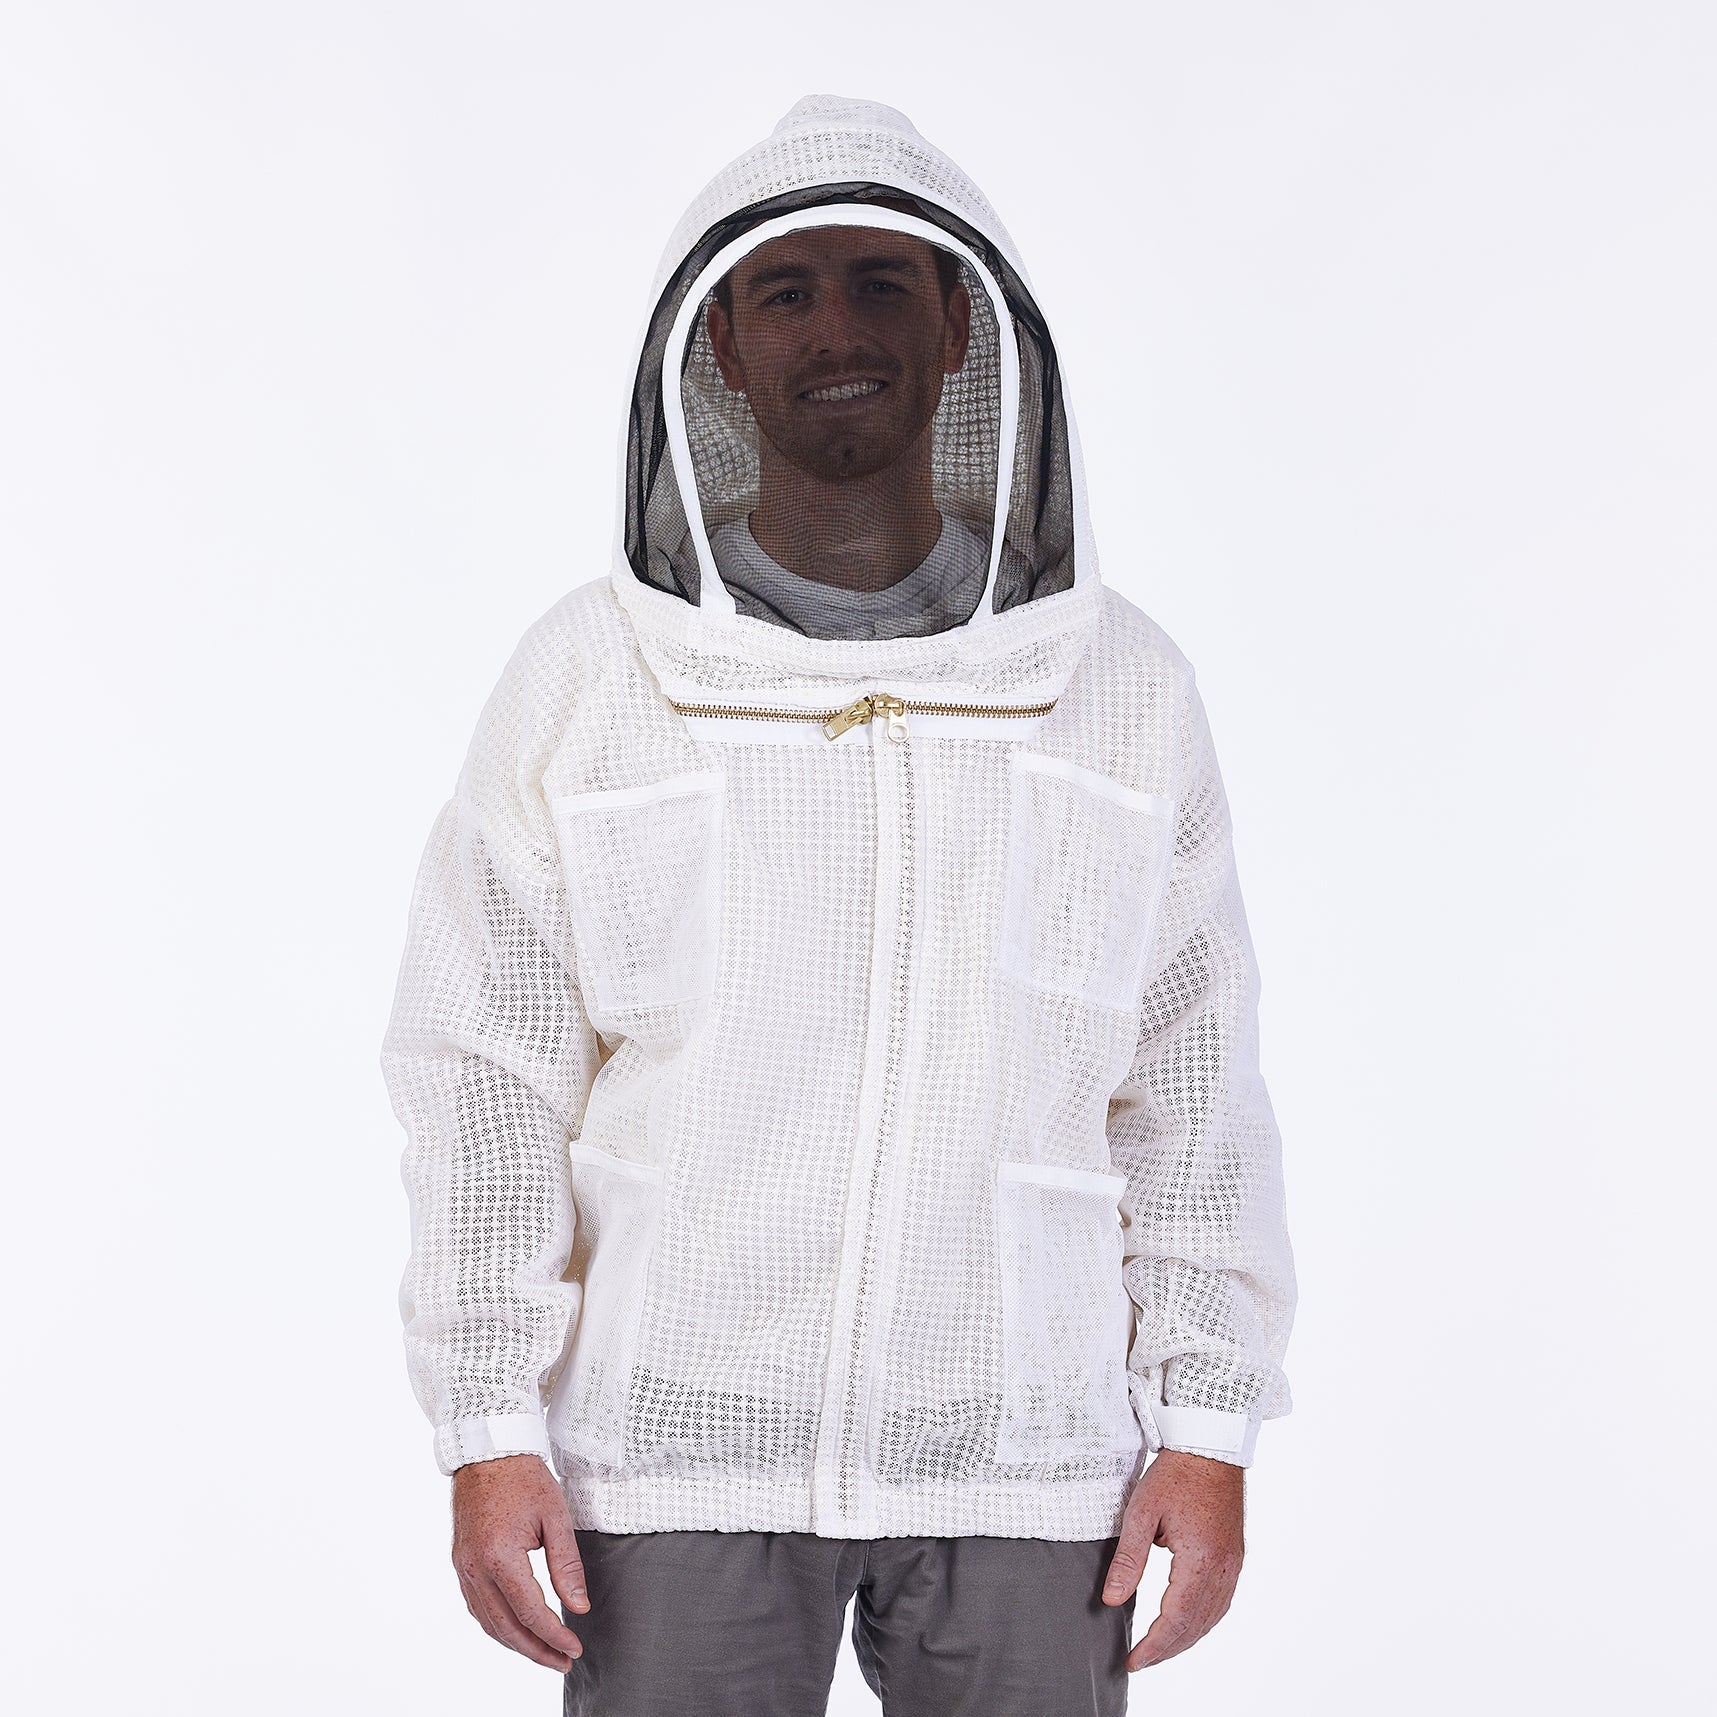 Ultra breeze bee suit  3 layer bee suit - Beekeeper Suit